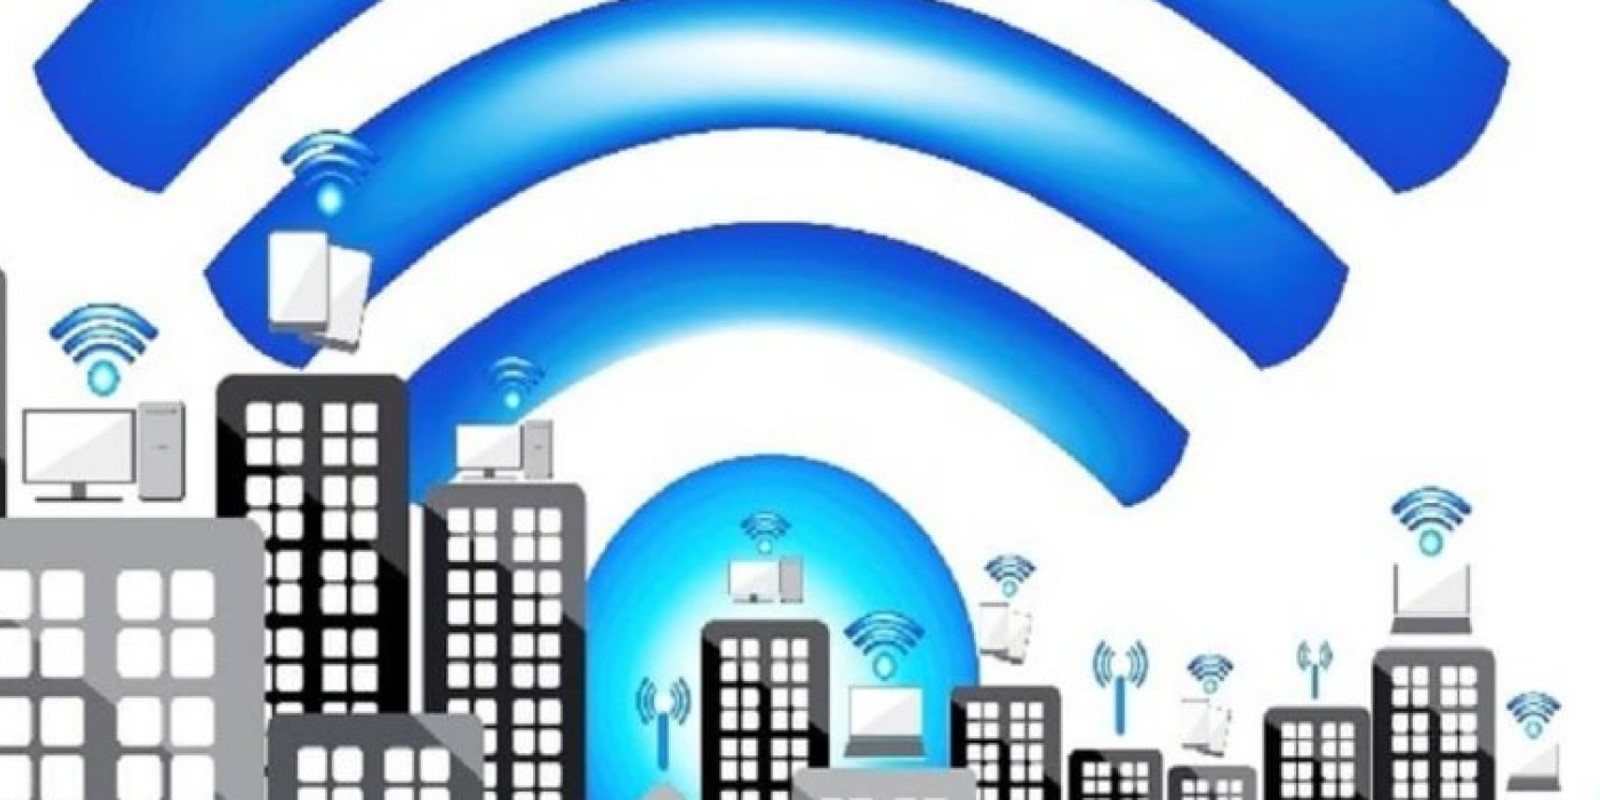 Un estudio señala el Wi-Fi como una "amenaza para la salud humana"